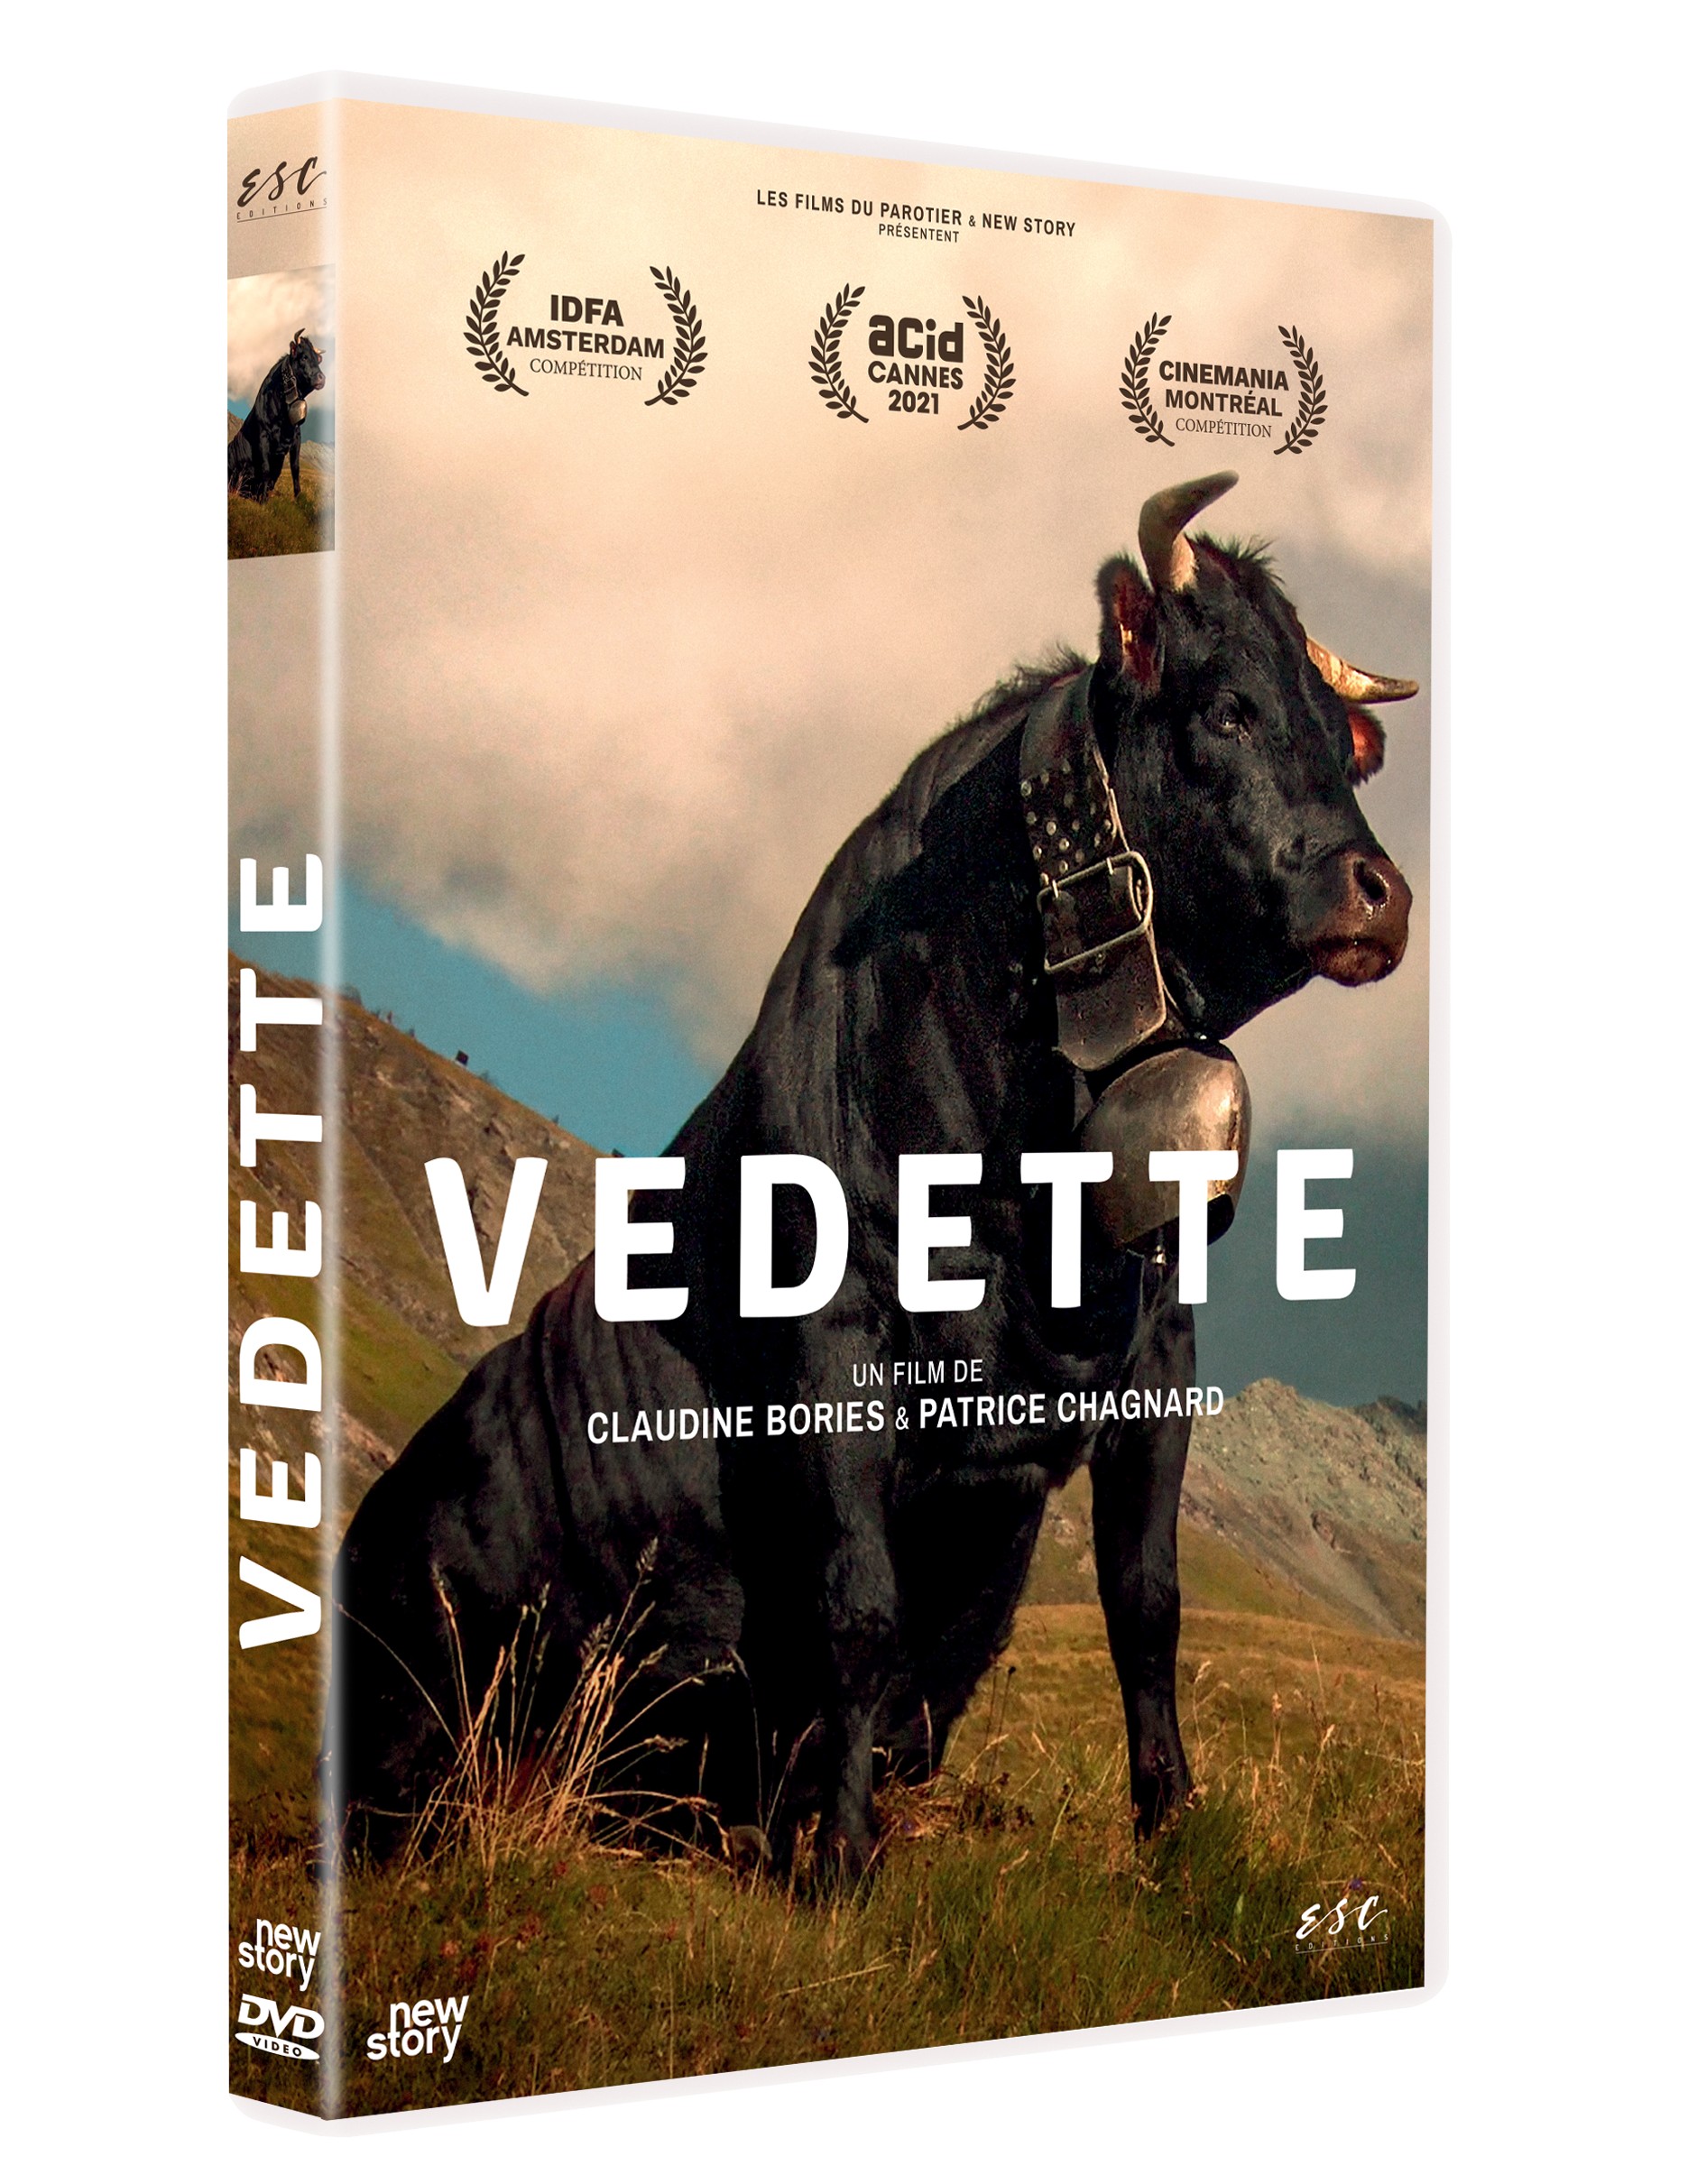 VEDETTE - DVD